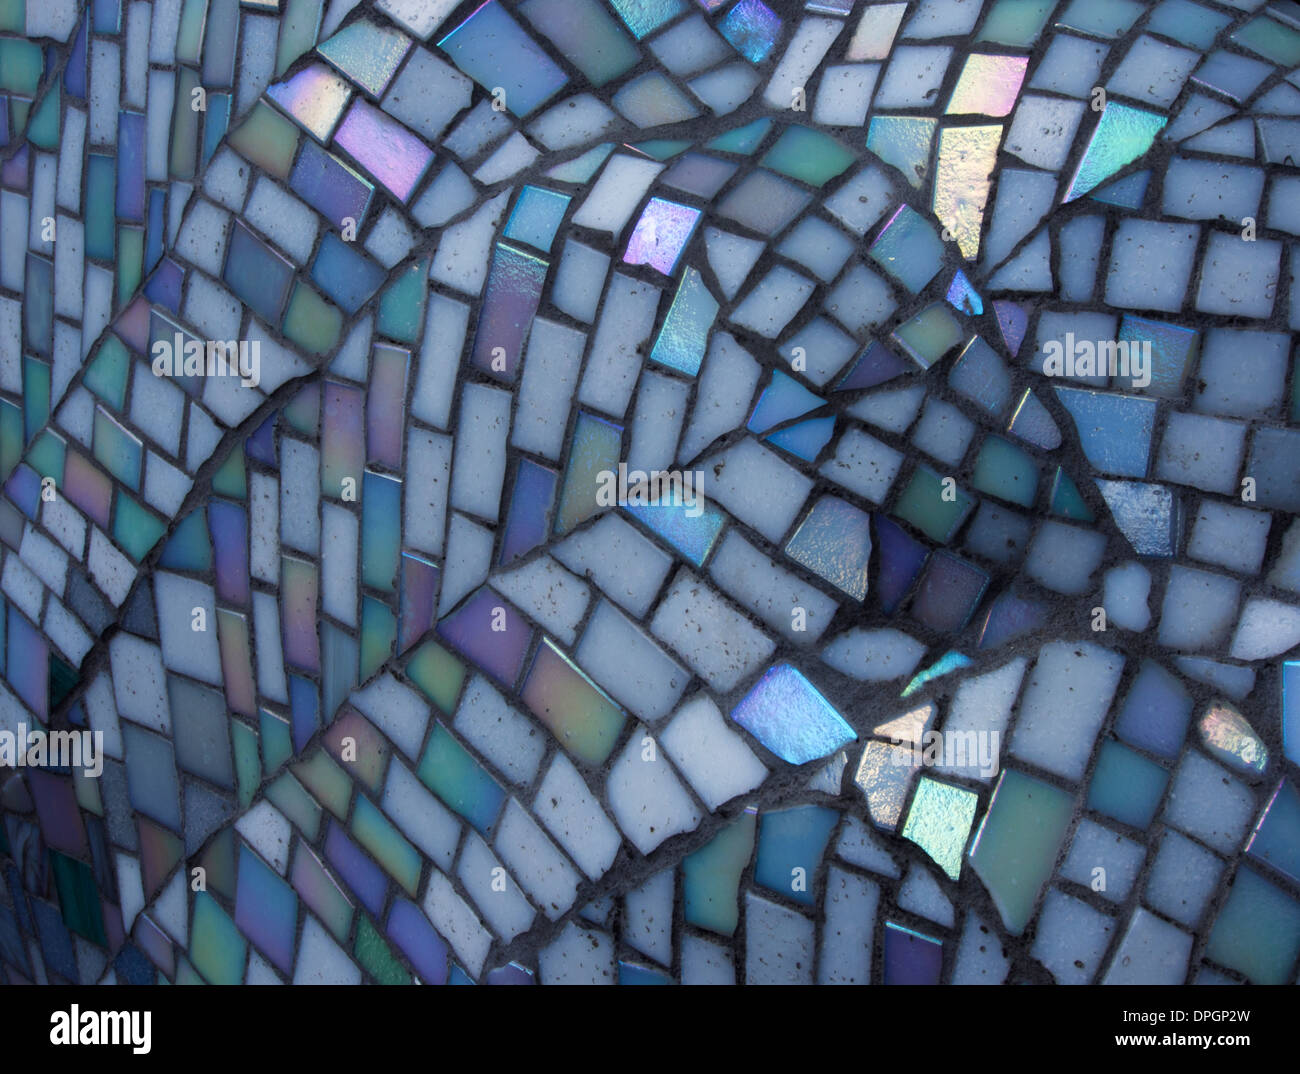 Un dettaglio del mosaico che copre uno dei cigni in vetroresina visto attorno ai pozzi nel 2012 Foto Stock